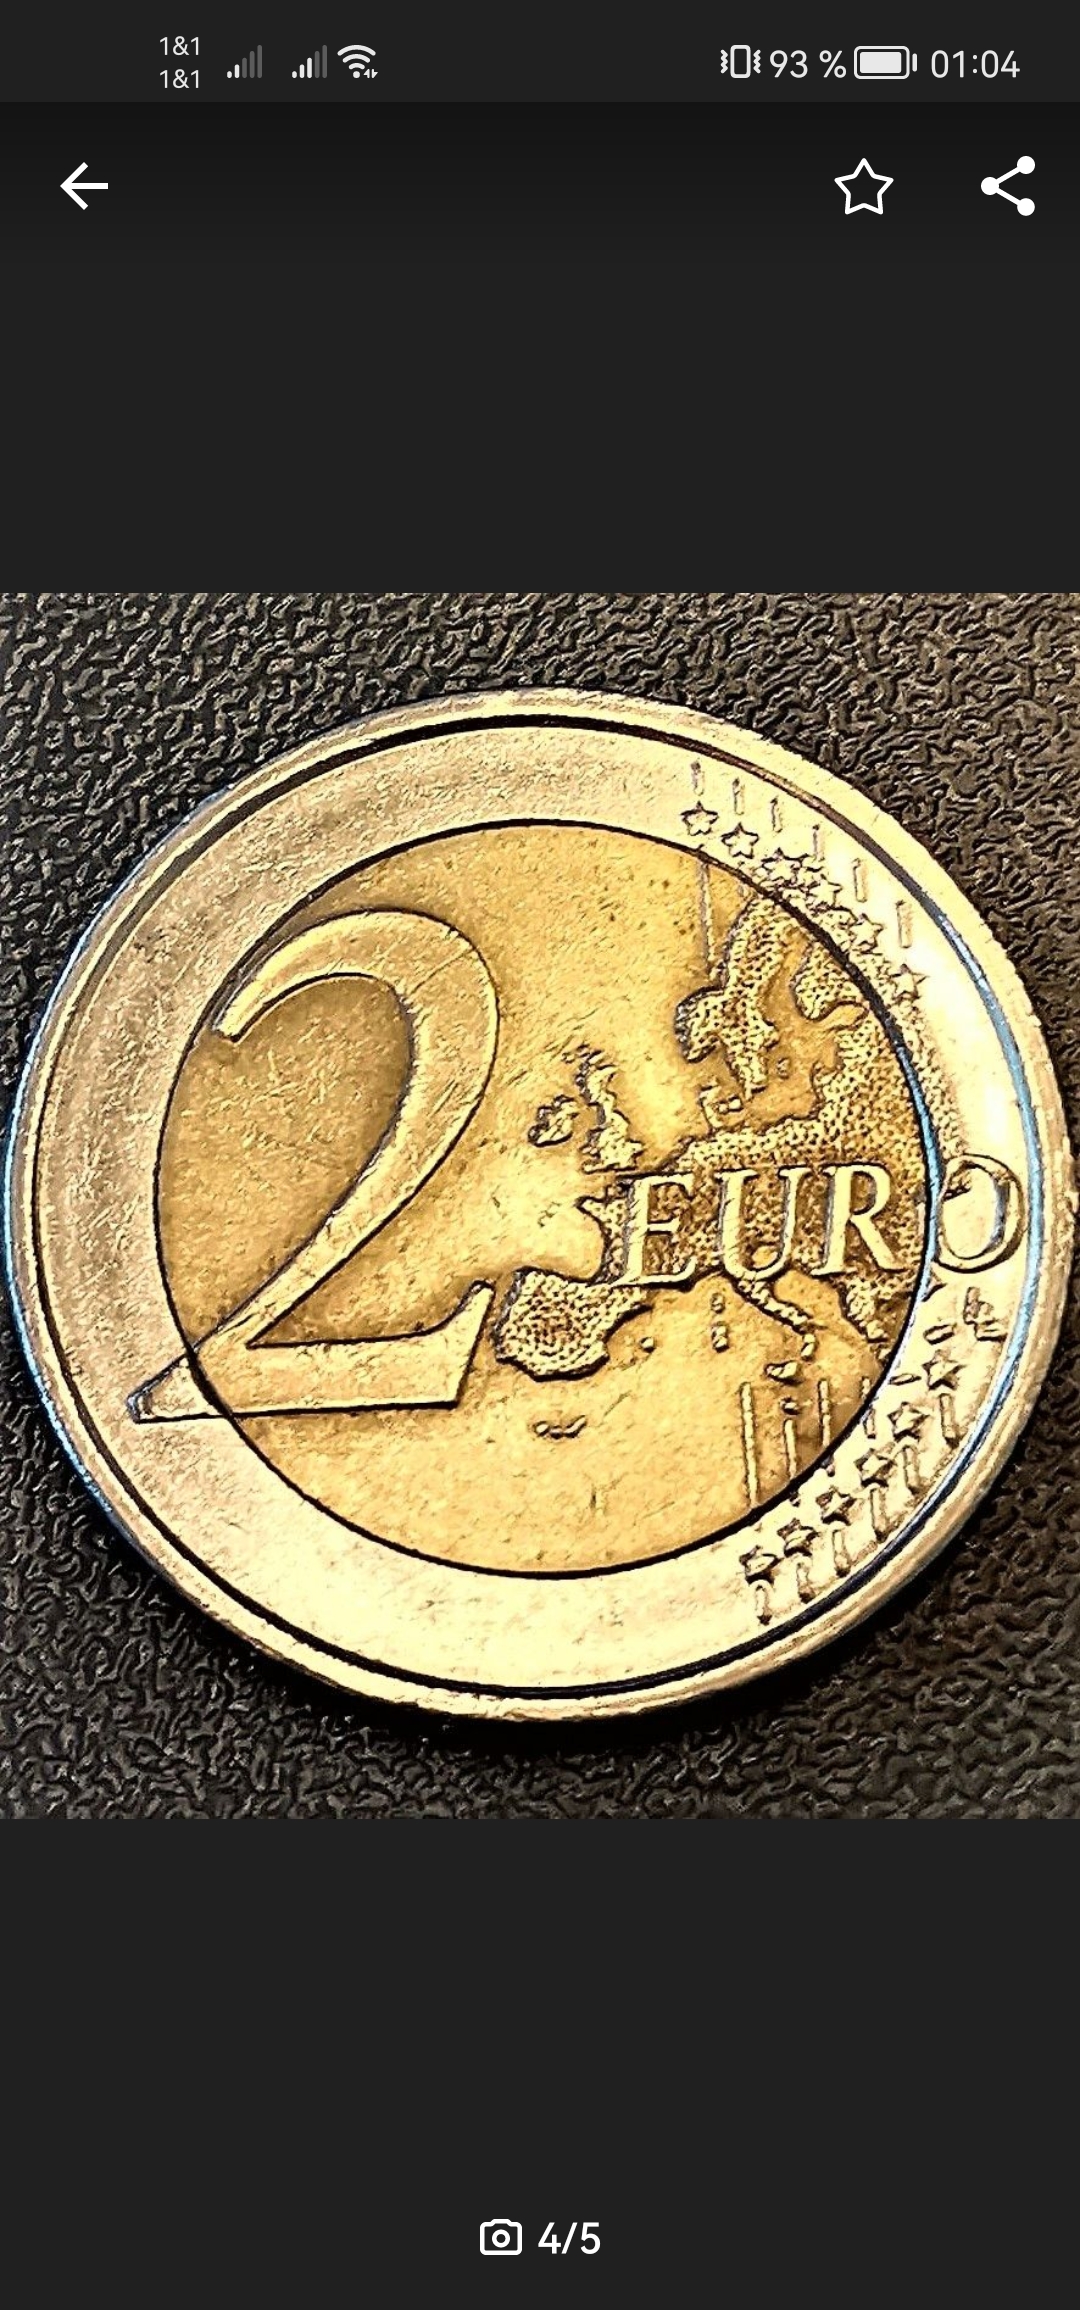 2 Euro münze 2019 zum gedenken. 30 Jahre Mauerfall mit fehlprägung.